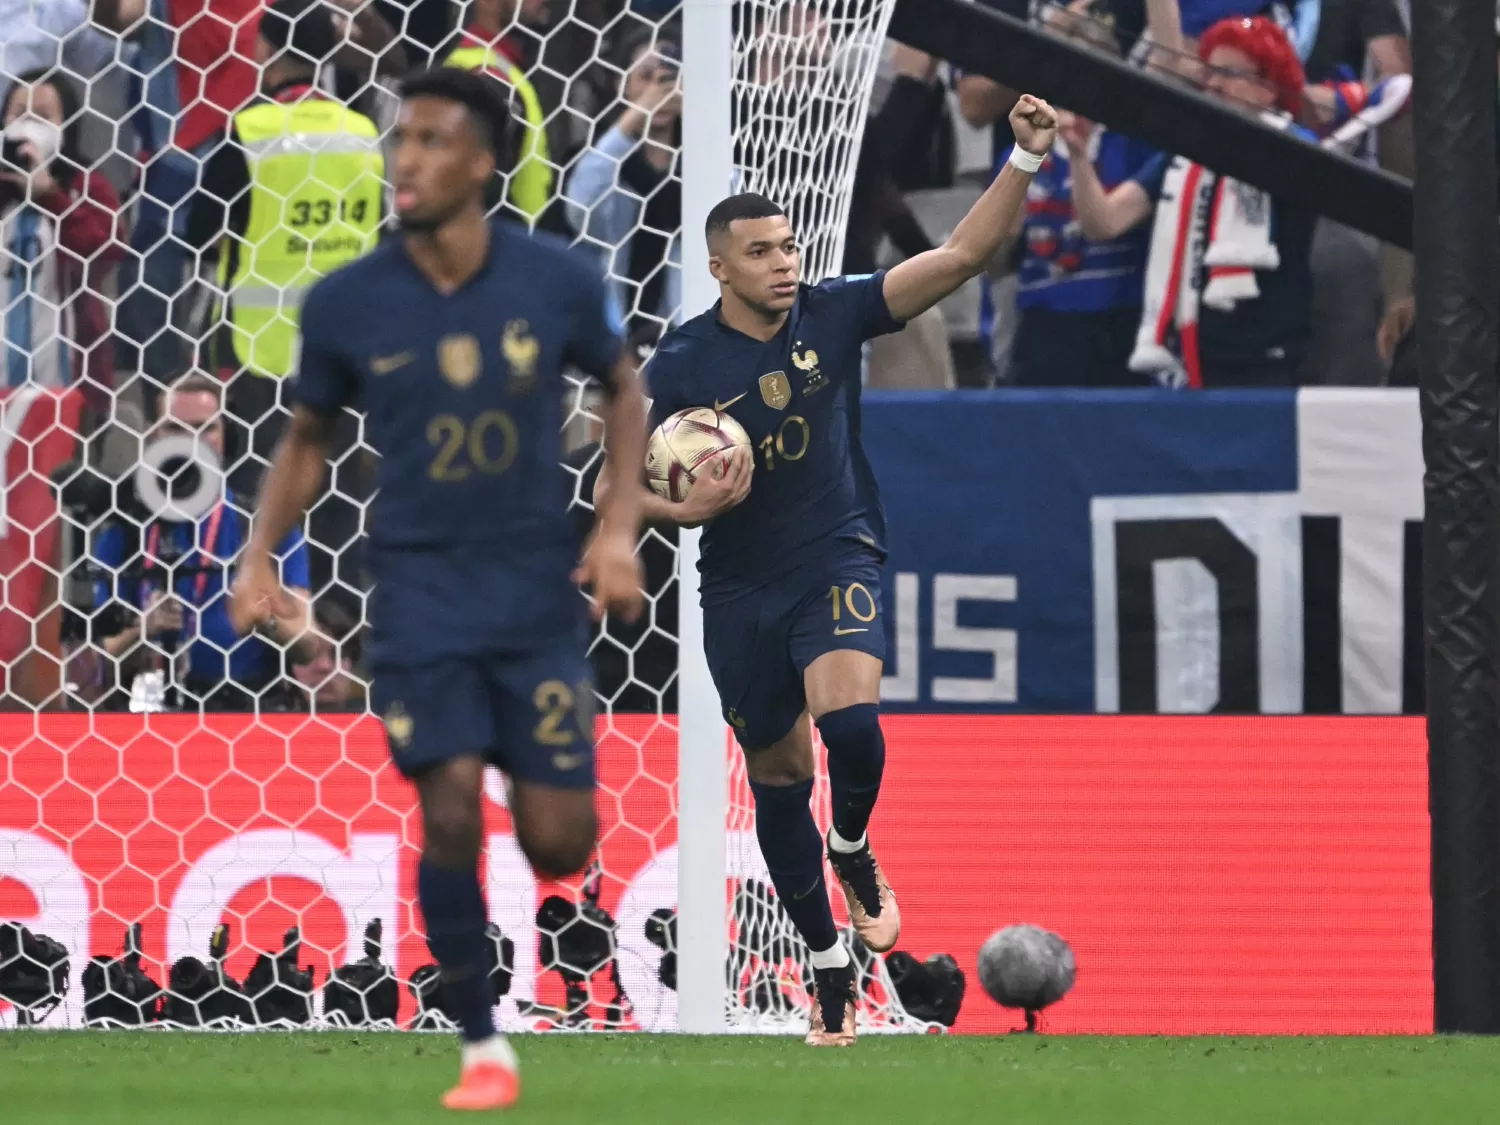 Após as oitavas de final, Mbappé é o artilheiro isolado da Copa do Mundo  2022